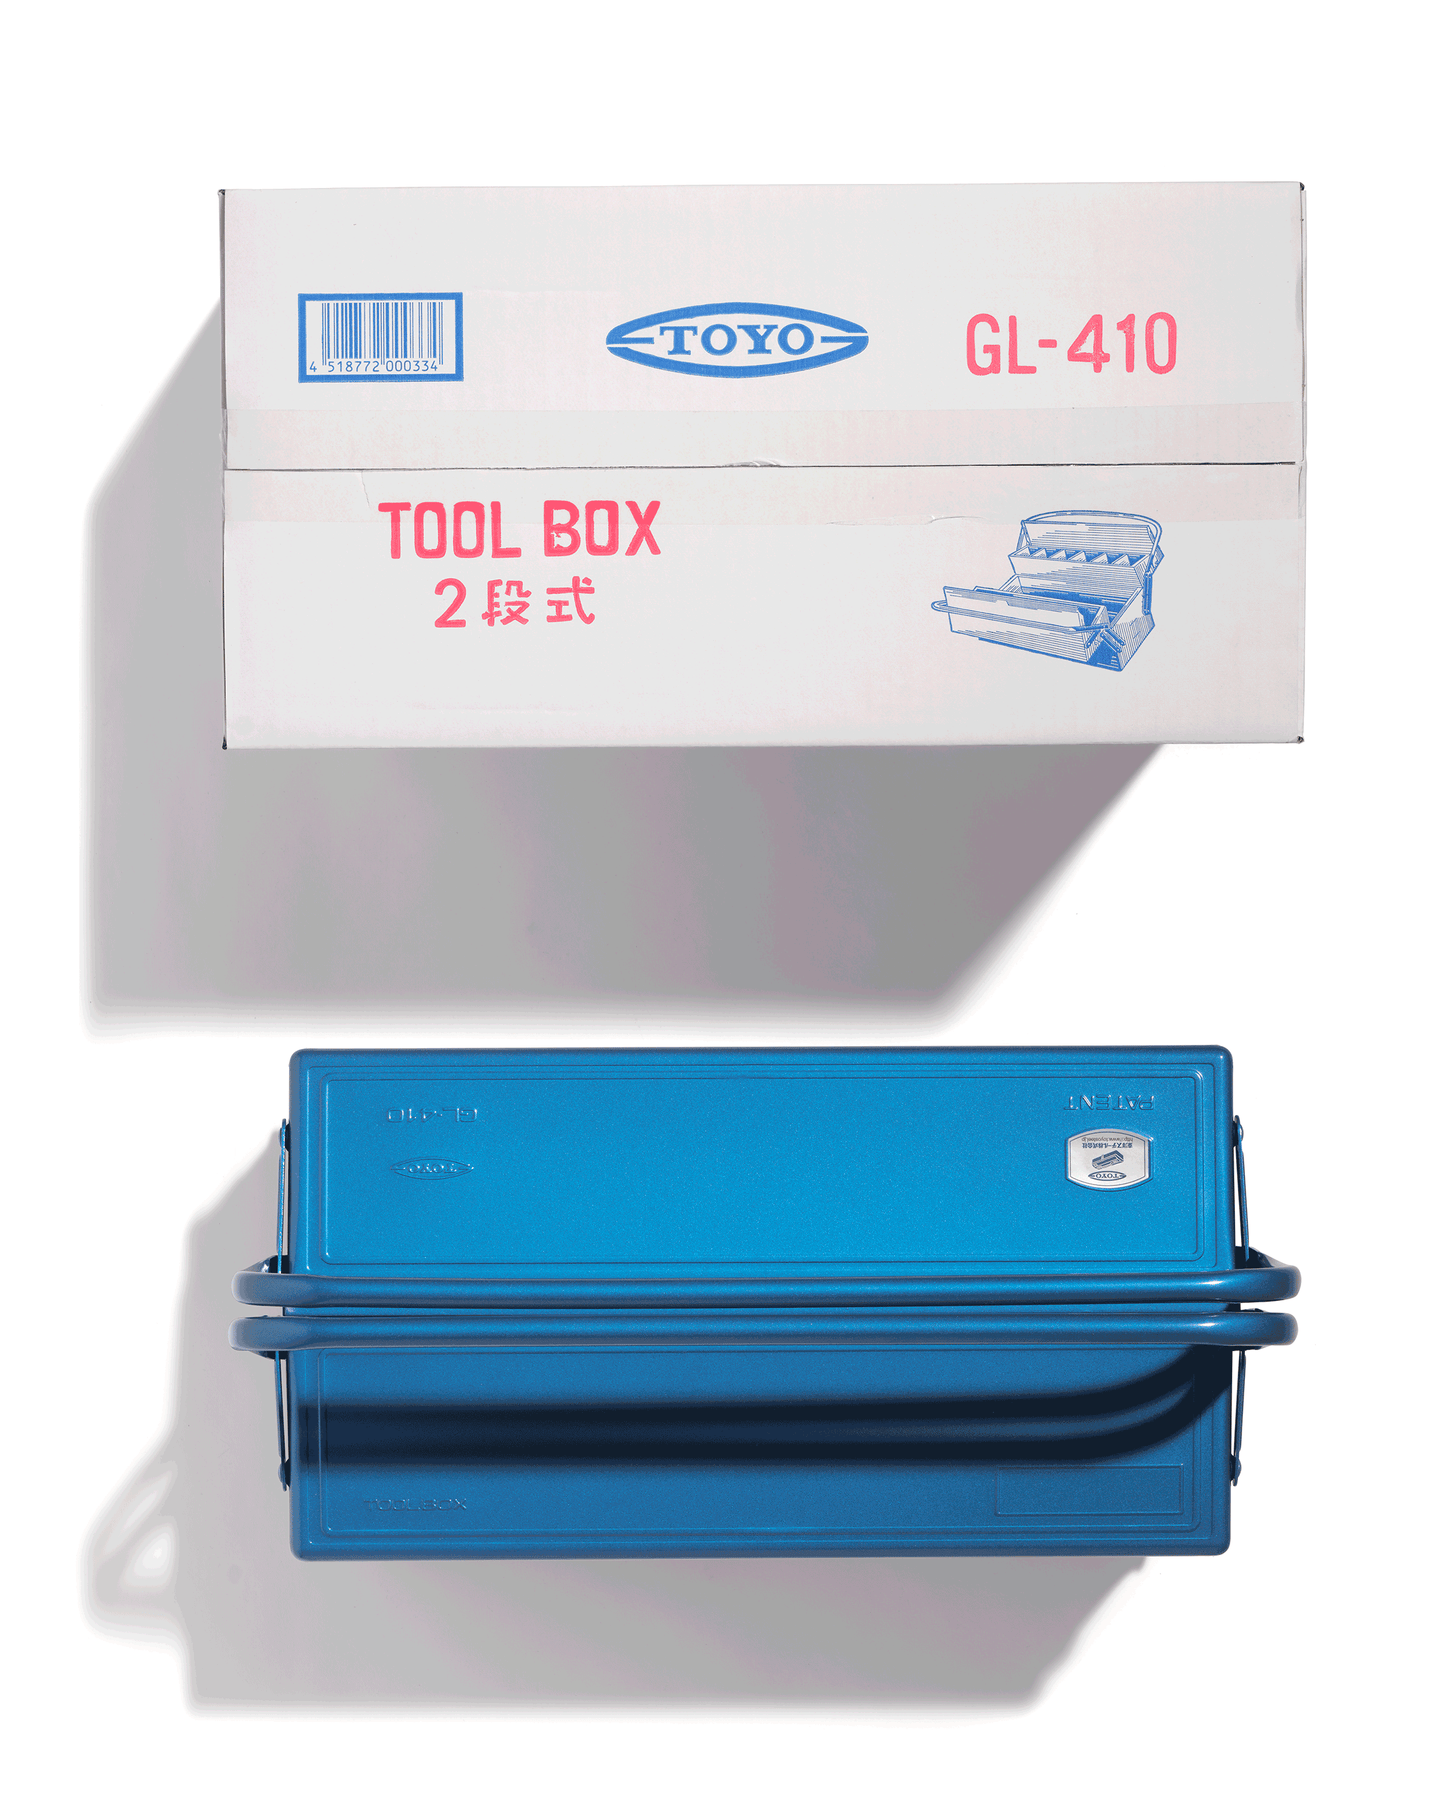 Toyo Steel GL-410 Large Tool Box